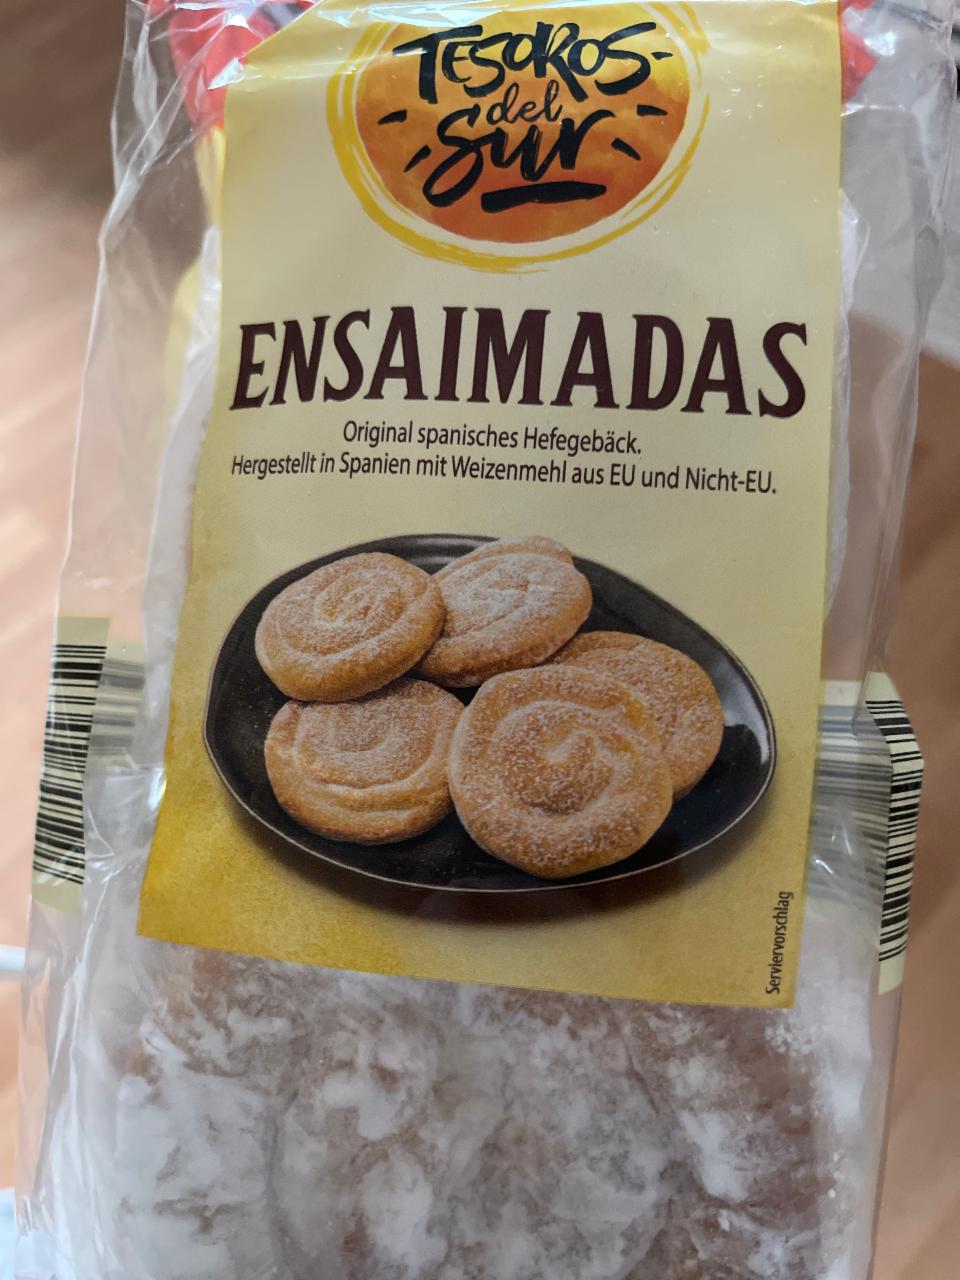 Фото - плюшки в сахарной пудре Ensaimadas Tesoros del sur